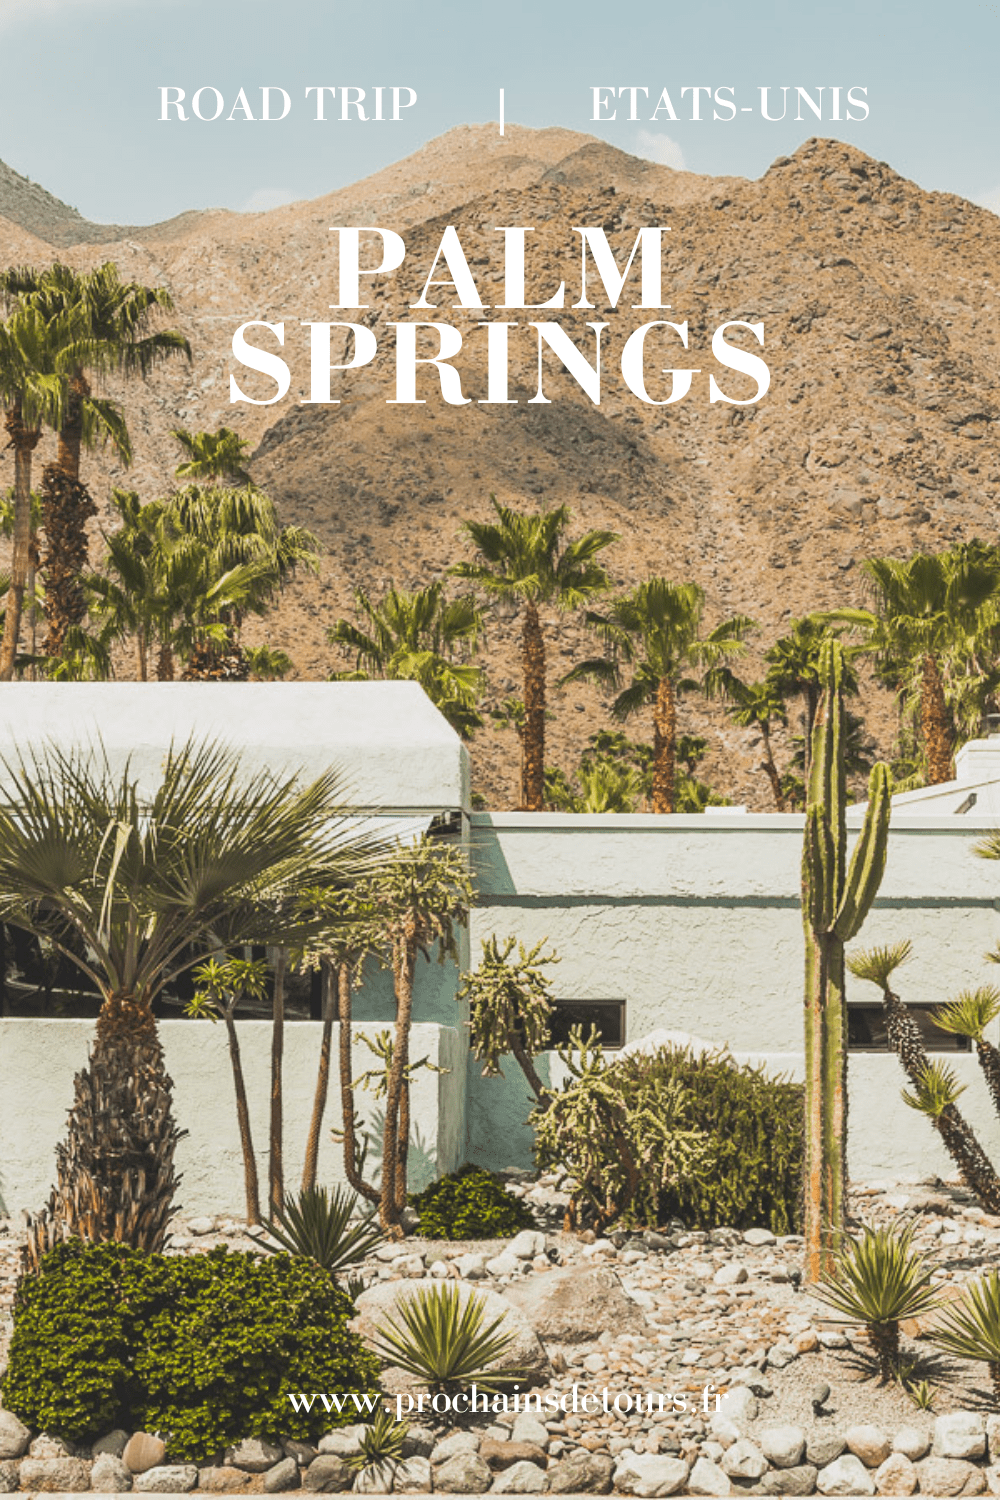 Palm Springs est une oasis ensoleillée dans le désert californien, offrant aux visiteurs une chance de se détendre et de se ressourcer grâce à sa beauté naturelle, ses équipements modernes et son architecture incroyable. Palm Springs a quelque chose pour tout le monde, y compris pour les amoureux de photographie et ceux en quête de dépaysement. Venez vous adonner aux innombrables activités et attractions que la ville a à offrir et découvrez la beauté de cet endroit spécial.